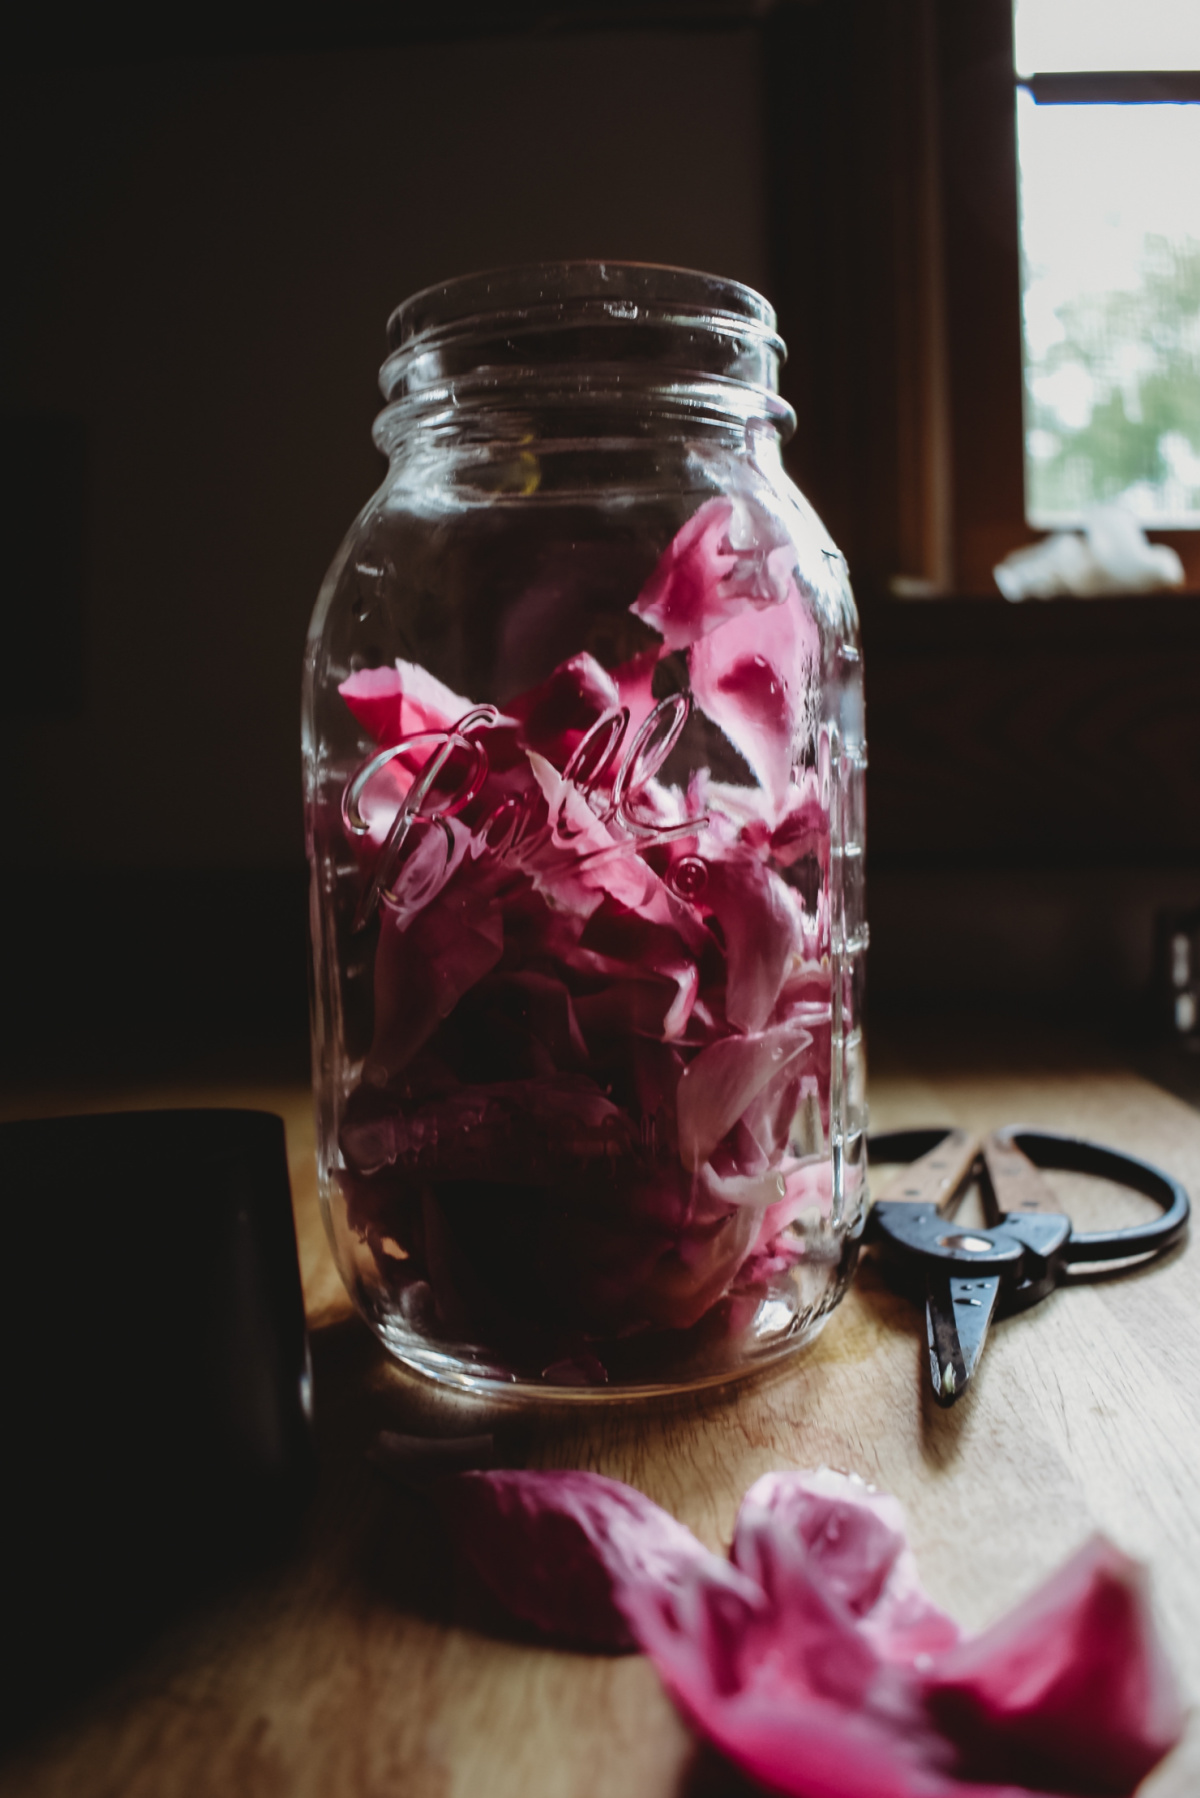 peony petals in a jar